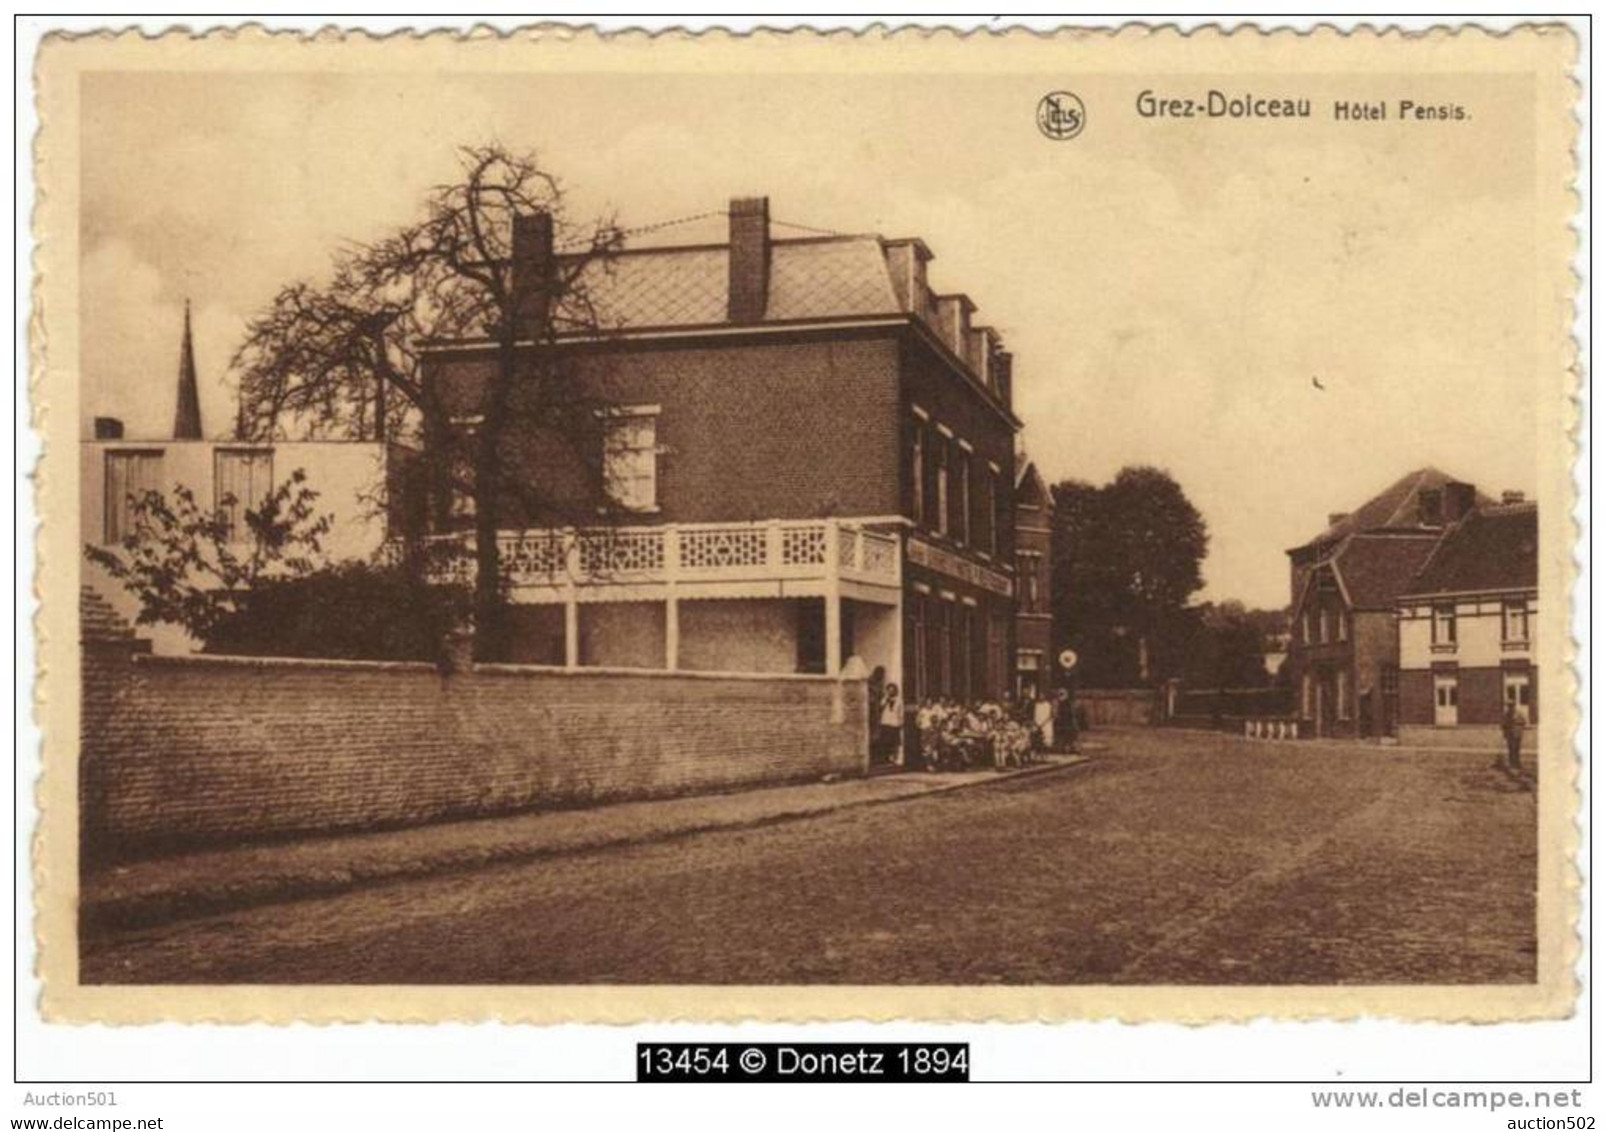 13454g HOTEL PENSIS - RESTAURANT - Grez-Doiceau - 1937 - Graven